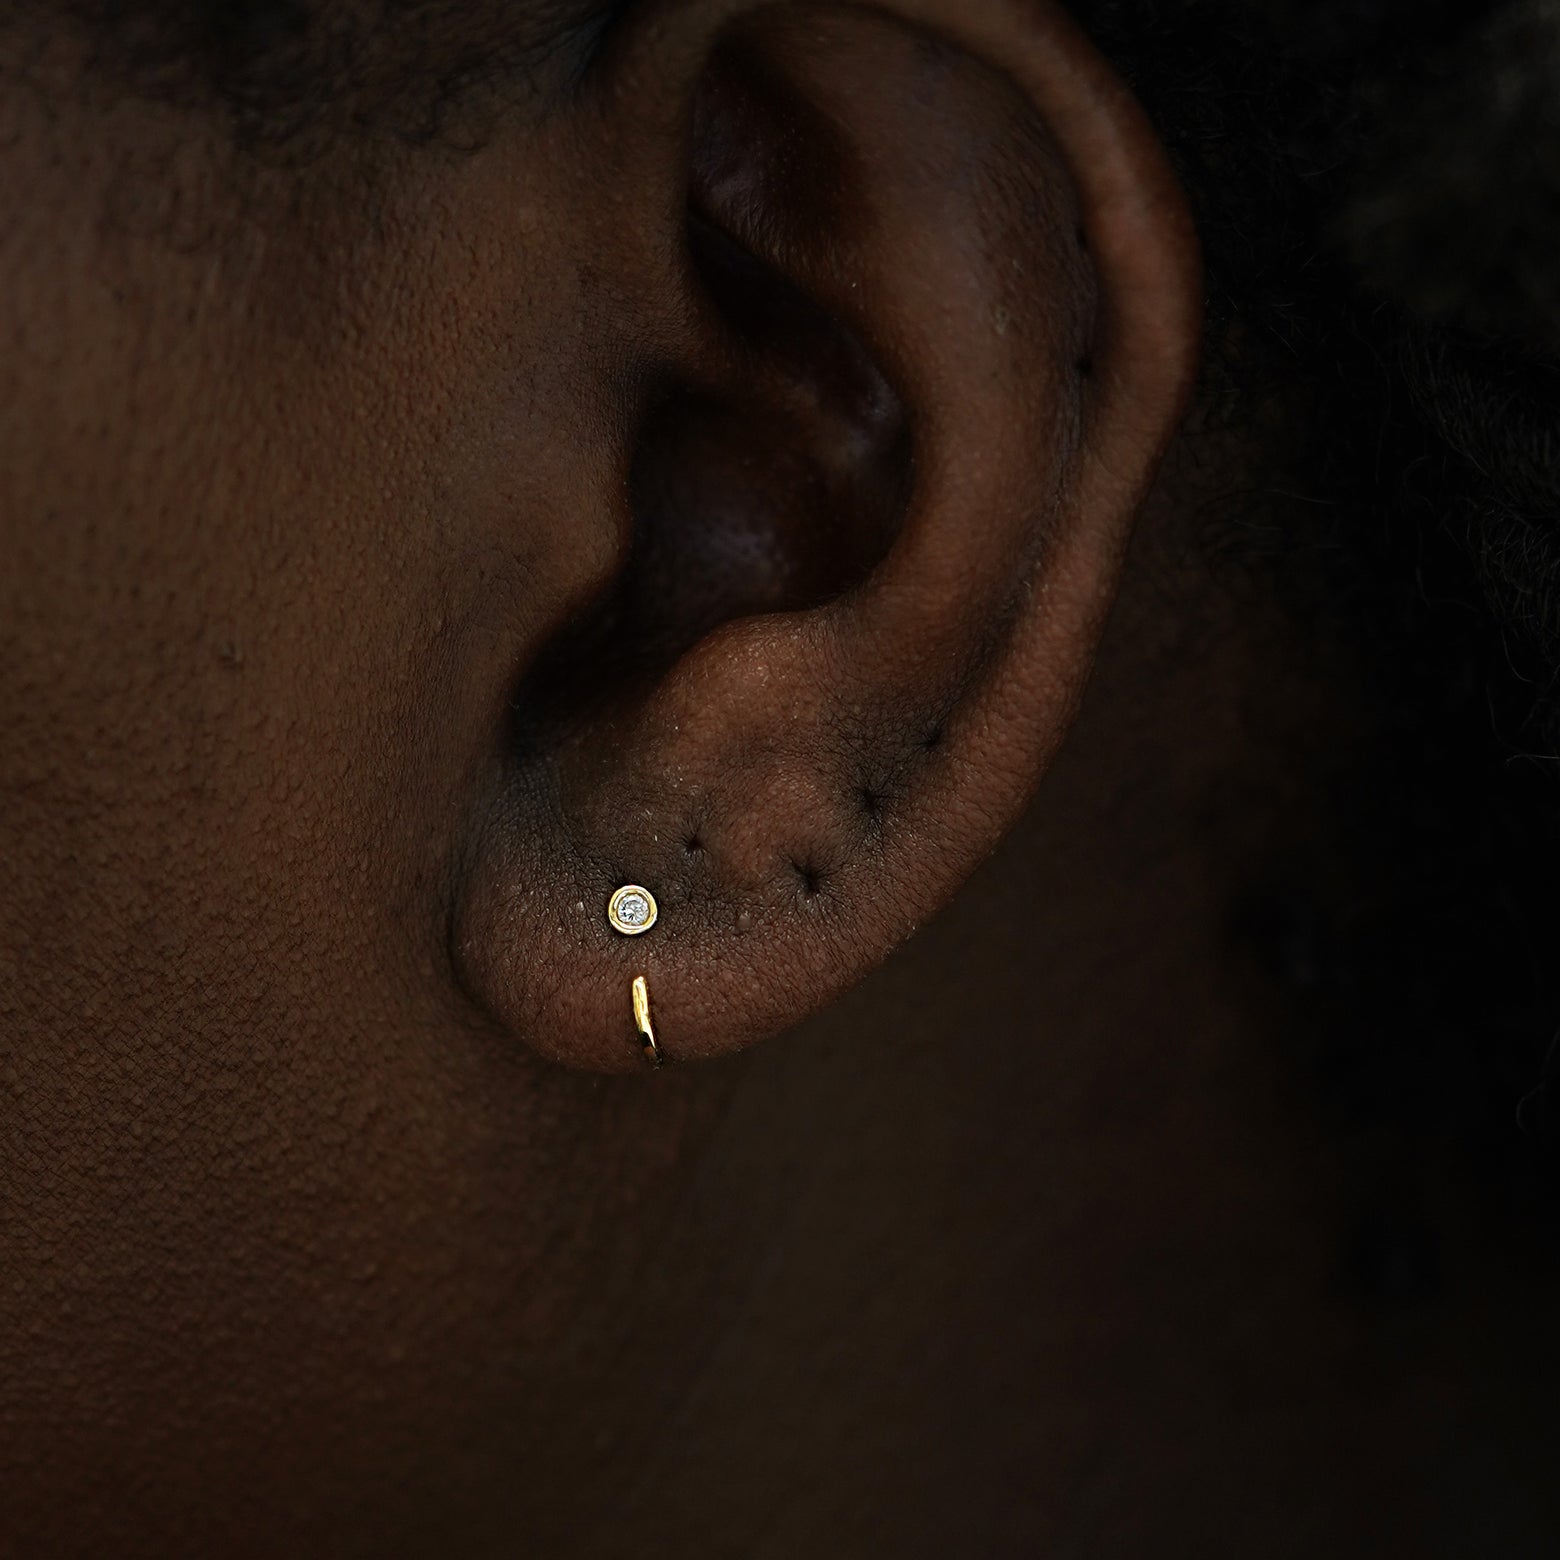 A model's ear wearing a 14k gold Diamond Open Hoop Earring